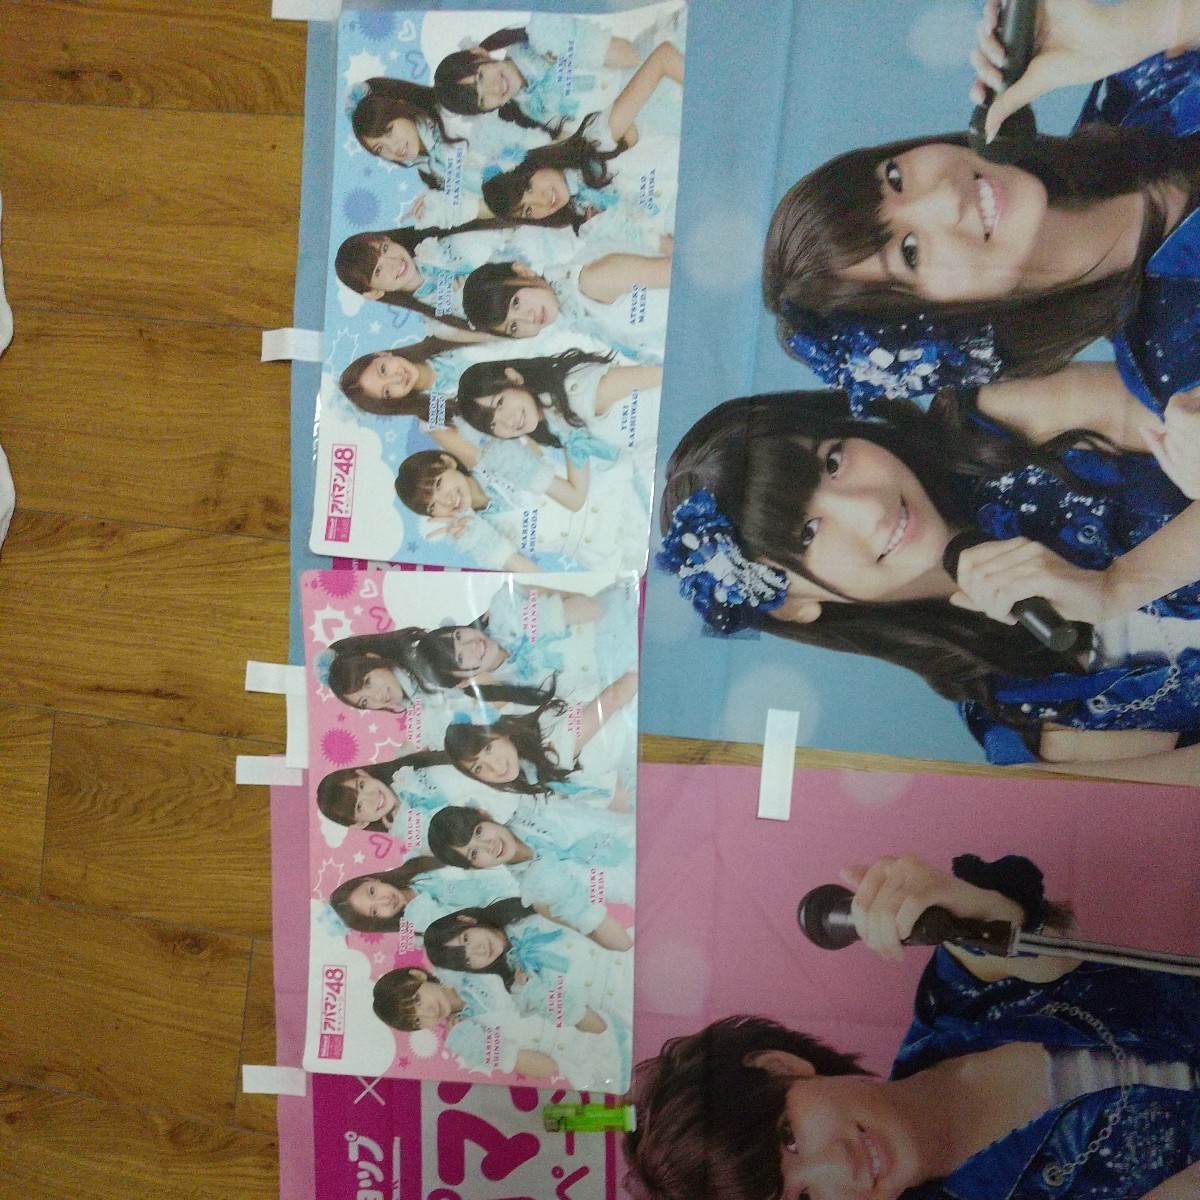 アパマンショップ AKB48 アパマン48キャンペーン のぼり2種 ランチョンマット2種 デジタオル マット ハンガー3種 スリッパ クッション他の画像6